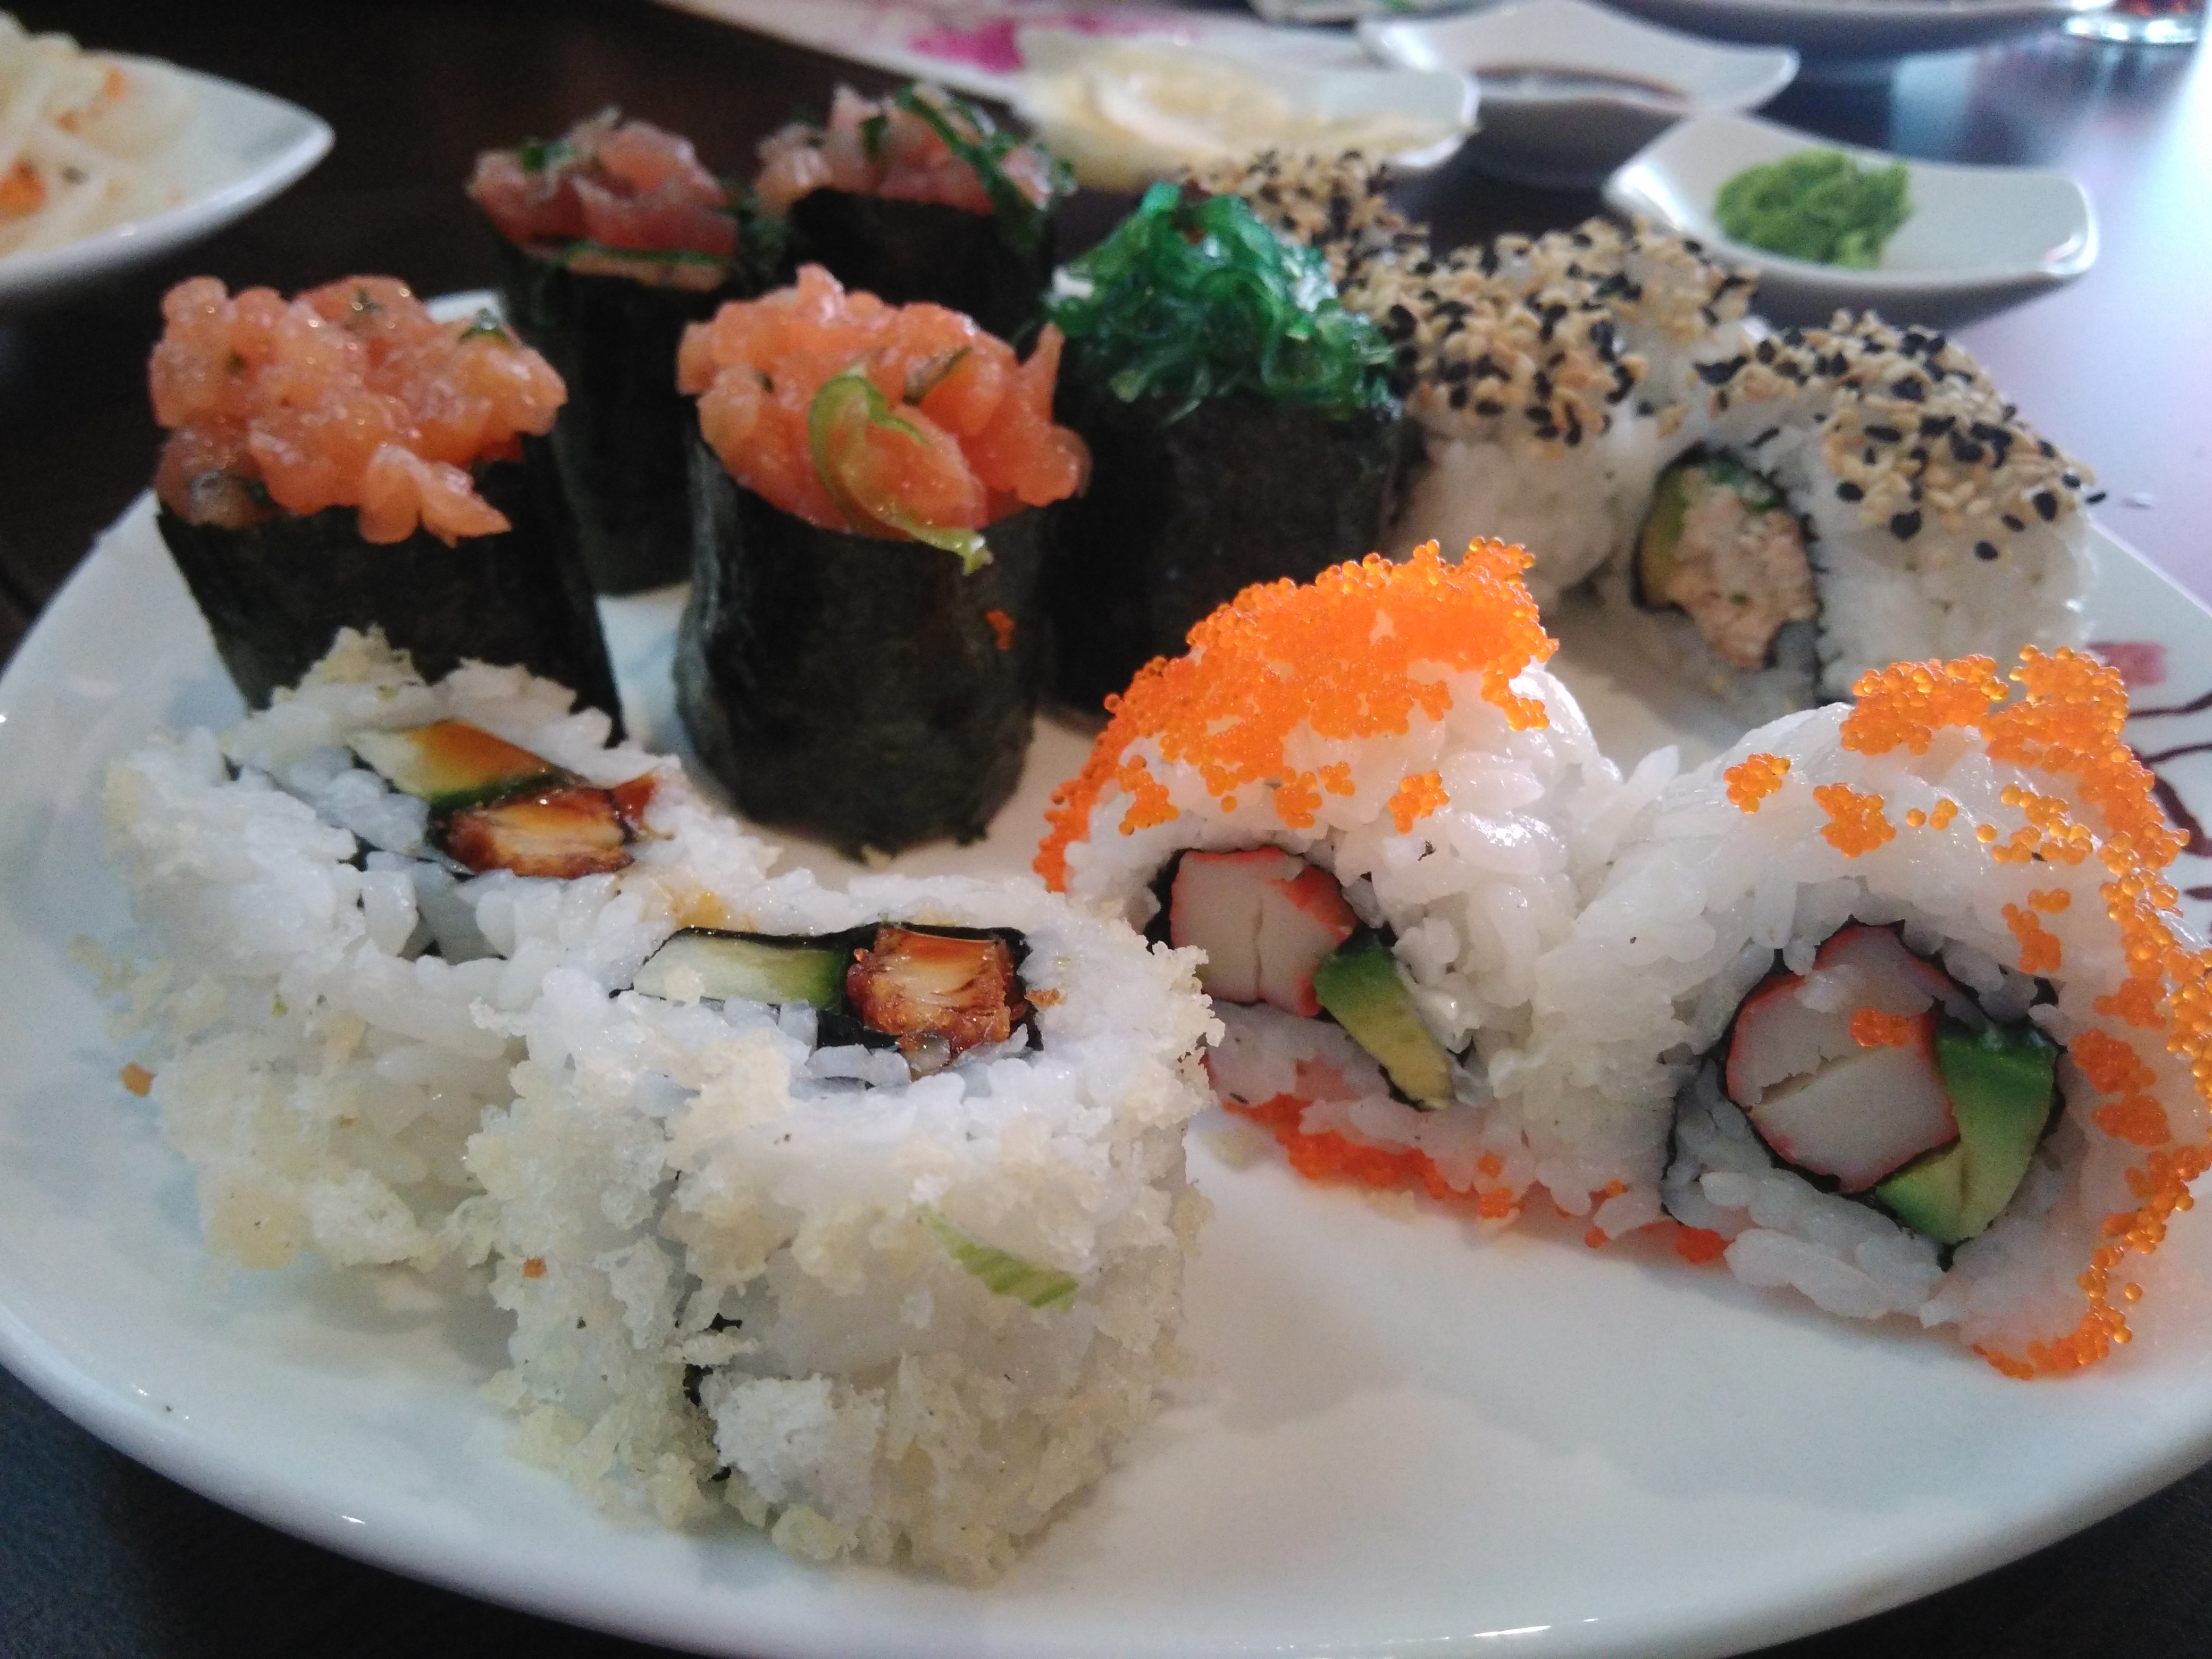 Gro&szlig;e Auswahl z.B. an Sushi und Vorspeisen. Alles sehr frisch.